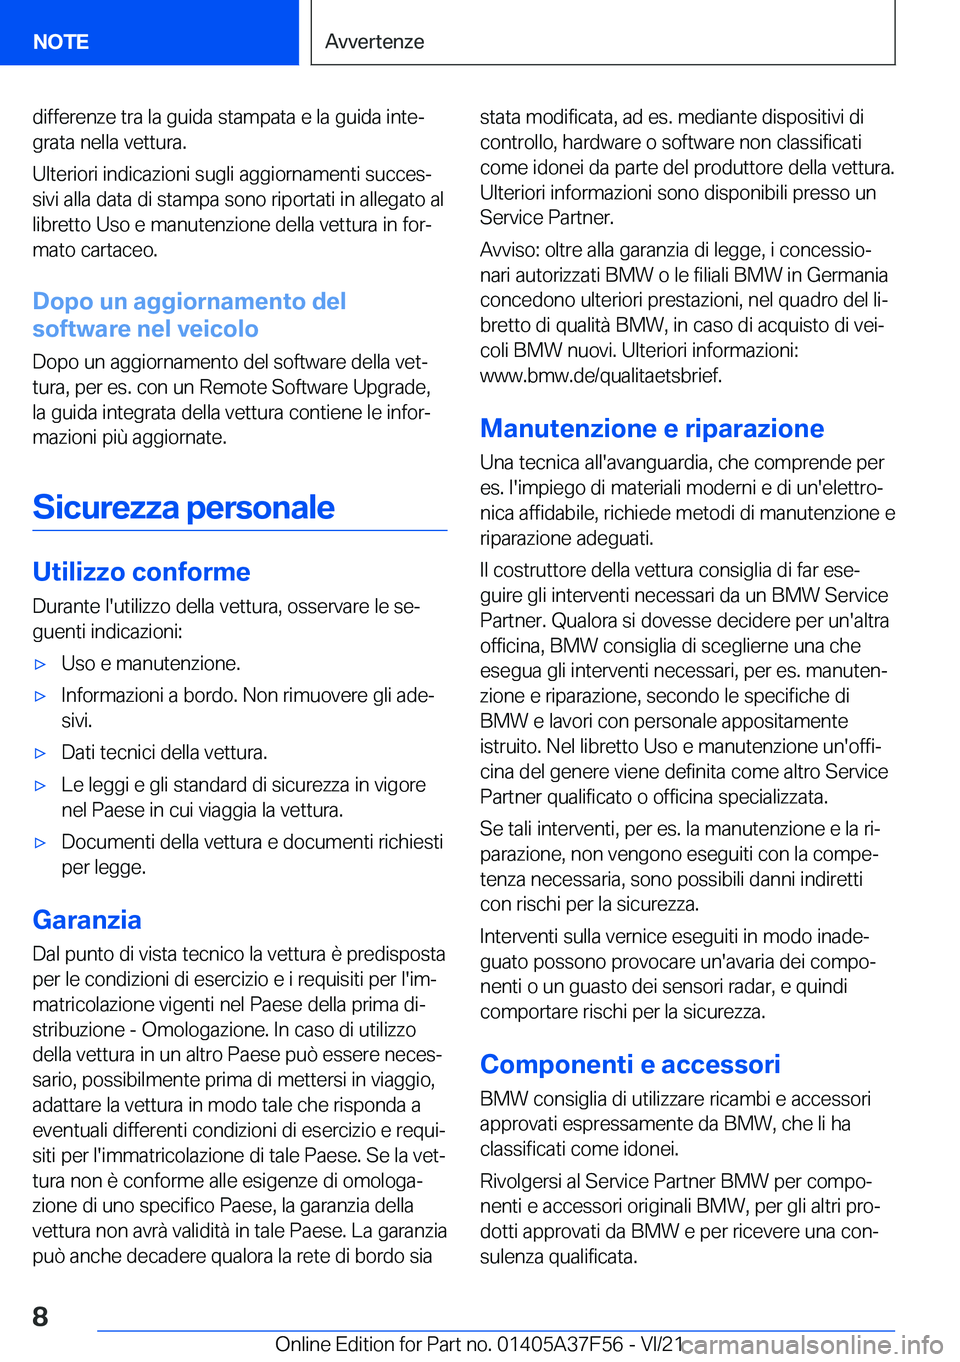 BMW M3 2022  Libretti Di Uso E manutenzione (in Italian) �d�i�f�f�e�r�e�n�z�e��t�r�a��l�a��g�u�i�d�a��s�t�a�m�p�a�t�a��e��l�a��g�u�i�d�a��i�n�t�eª�g�r�a�t�a��n�e�l�l�a��v�e�t�t�u�r�a�.
�U�l�t�e�r�i�o�r�i��i�n�d�i�c�a�z�i�o�n�i��s�u�g�l�i��a�g